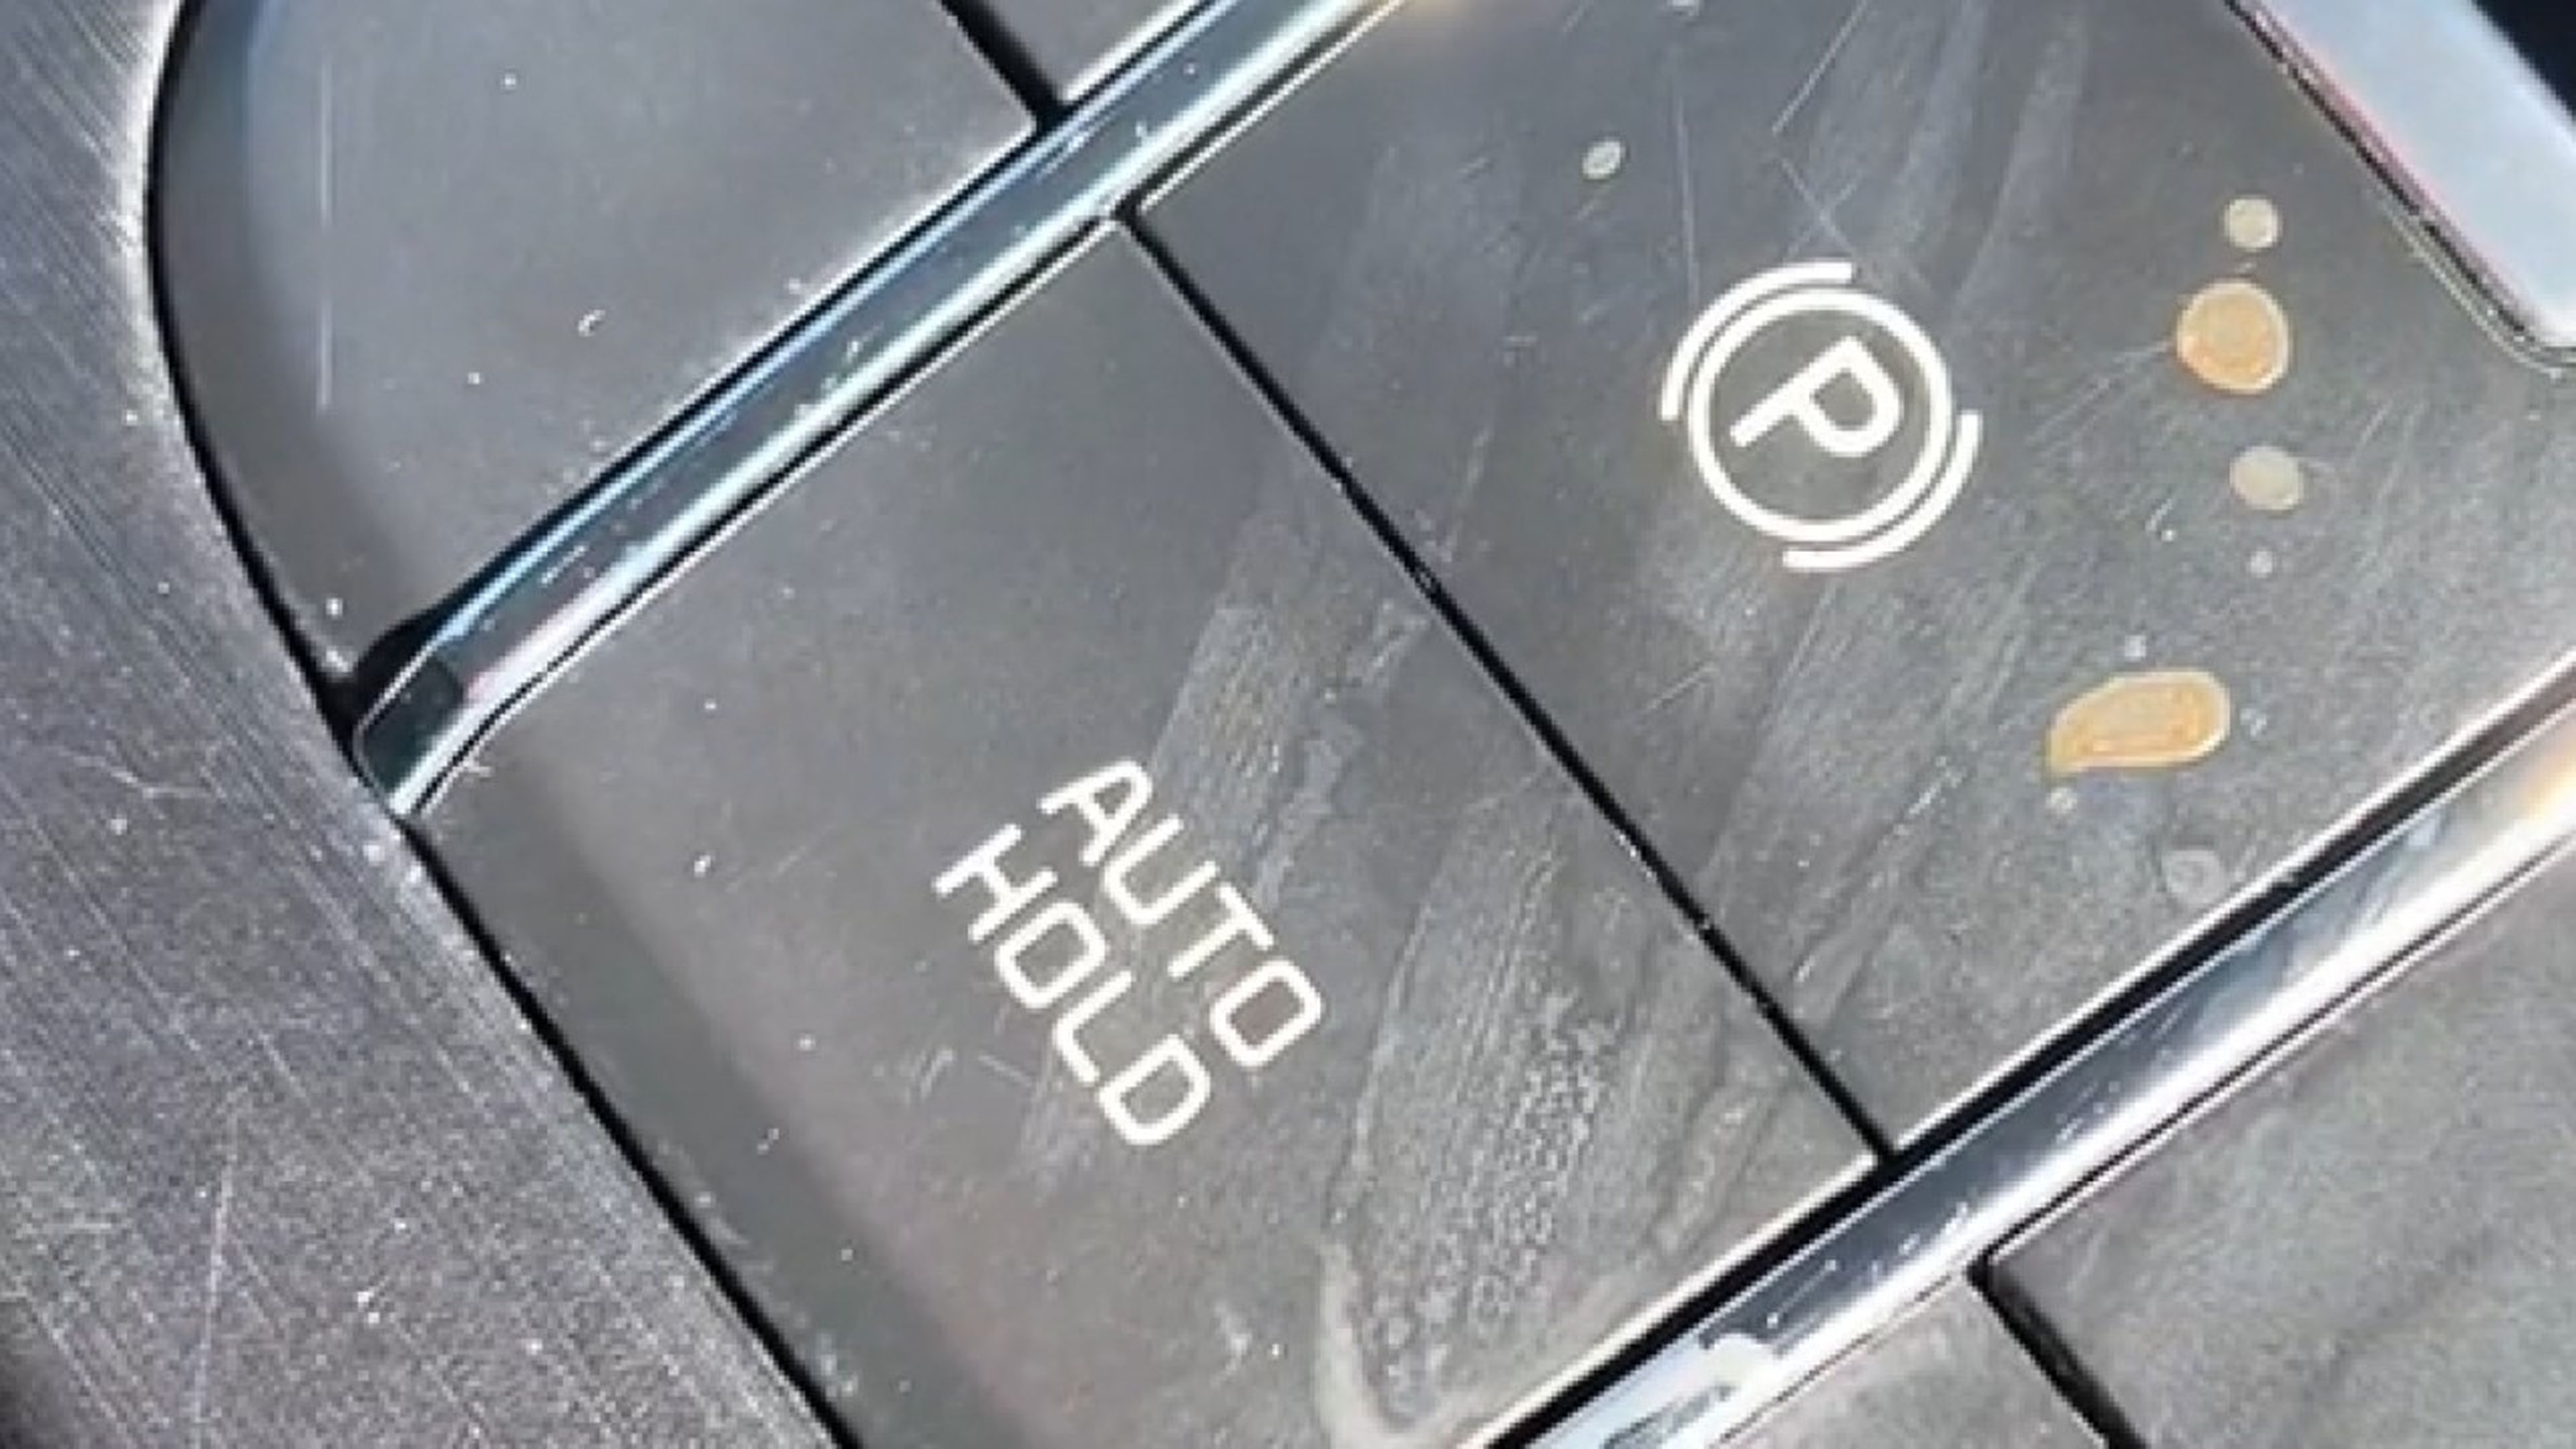 función de este botón desconocido del coche